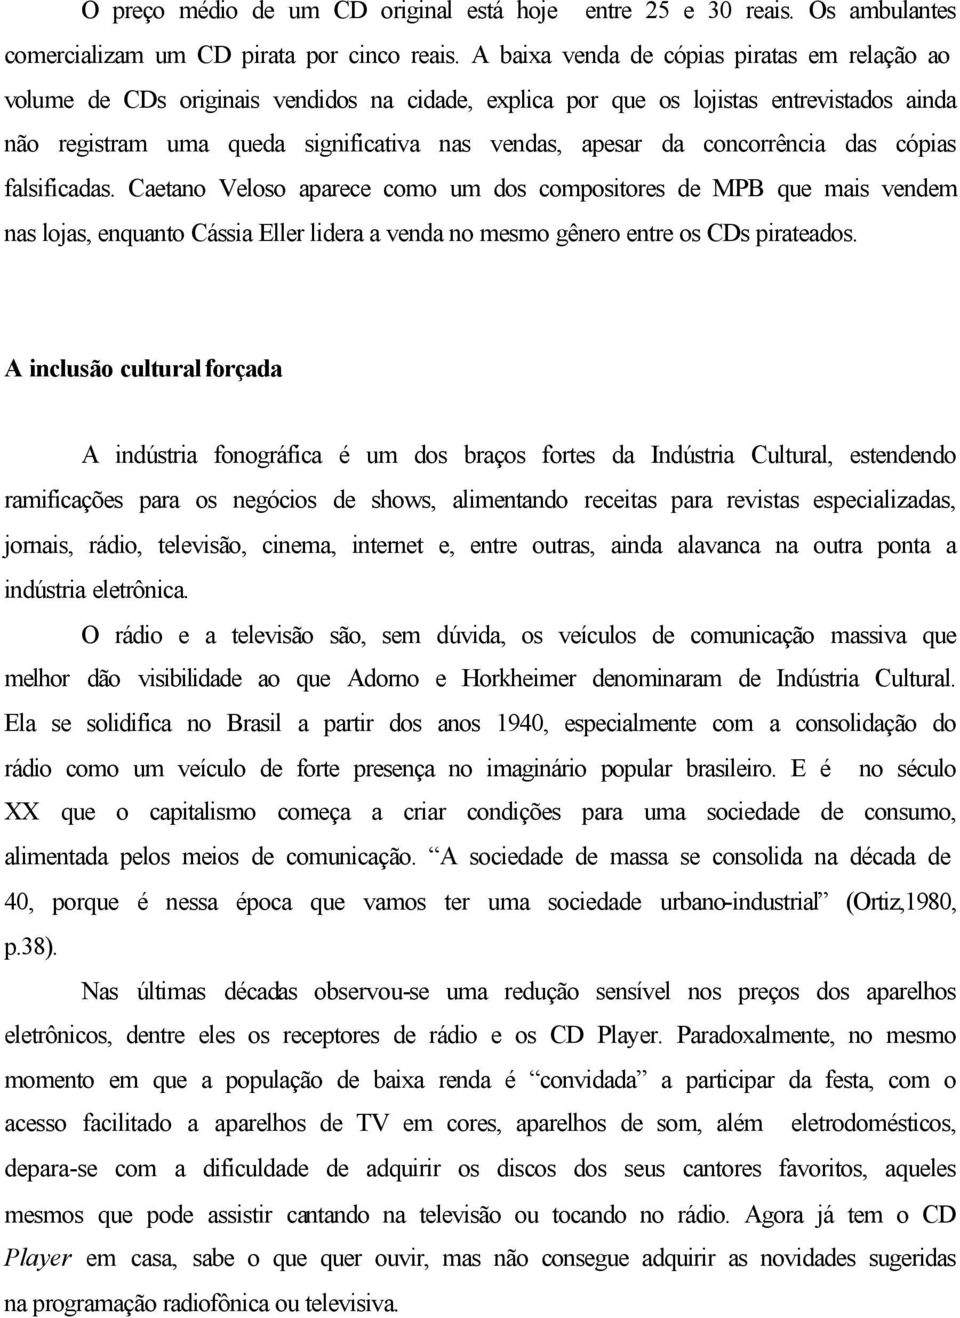 concorrência das cópias falsificadas. Caetano Veloso aparece como um dos compositores de MPB que mais vendem nas lojas, enquanto Cássia Eller lidera a venda no mesmo gênero entre os CDs pirateados.